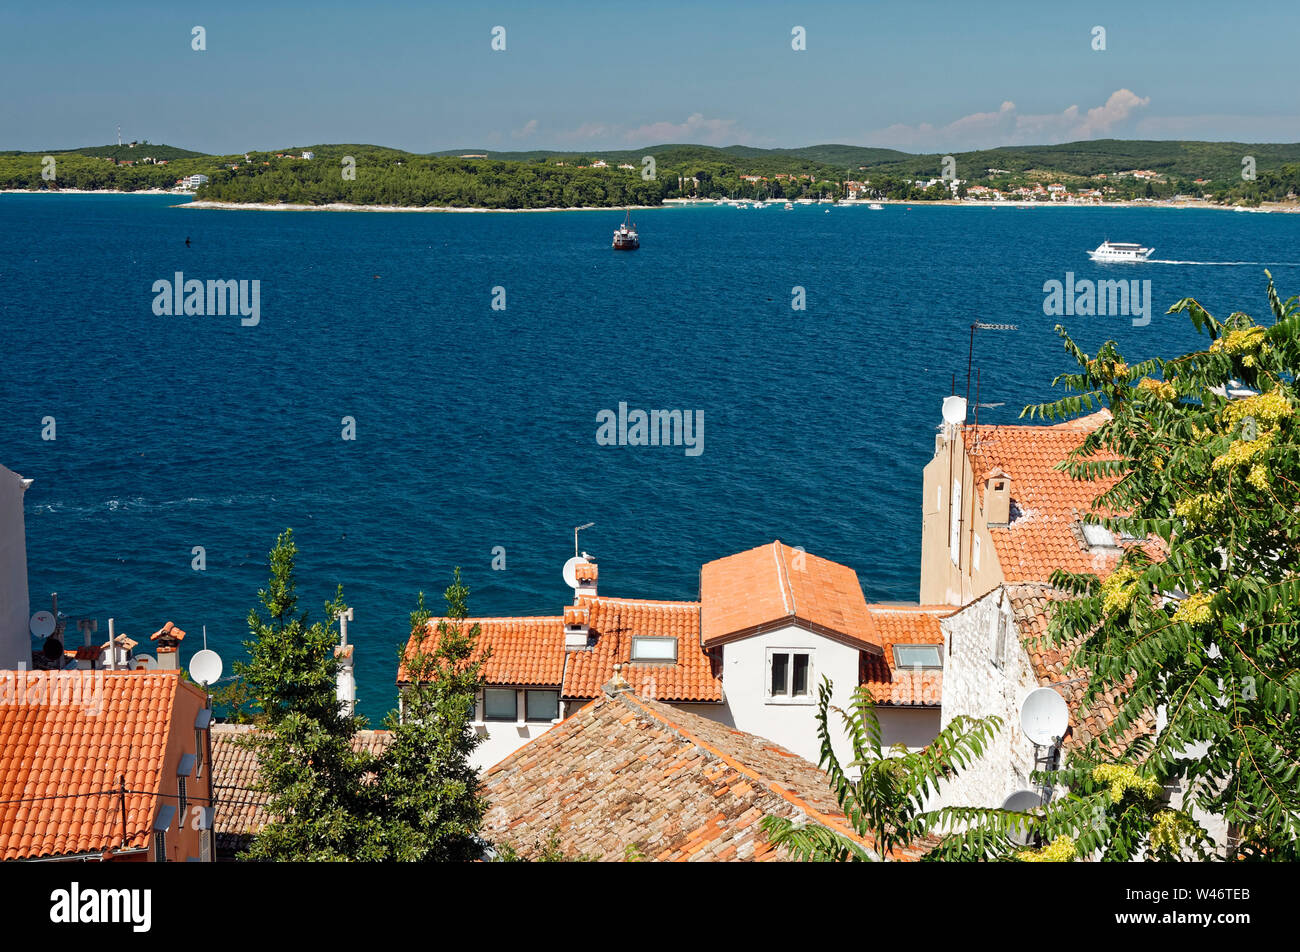 Sommaire ; la mer Adriatique du nord, péninsule d'Istrie, vieilles maisons, toits de tuiles rouges ; l'eau, scène côtière, Rovinj, Croatie, Europe, l'été, horizontal Banque D'Images